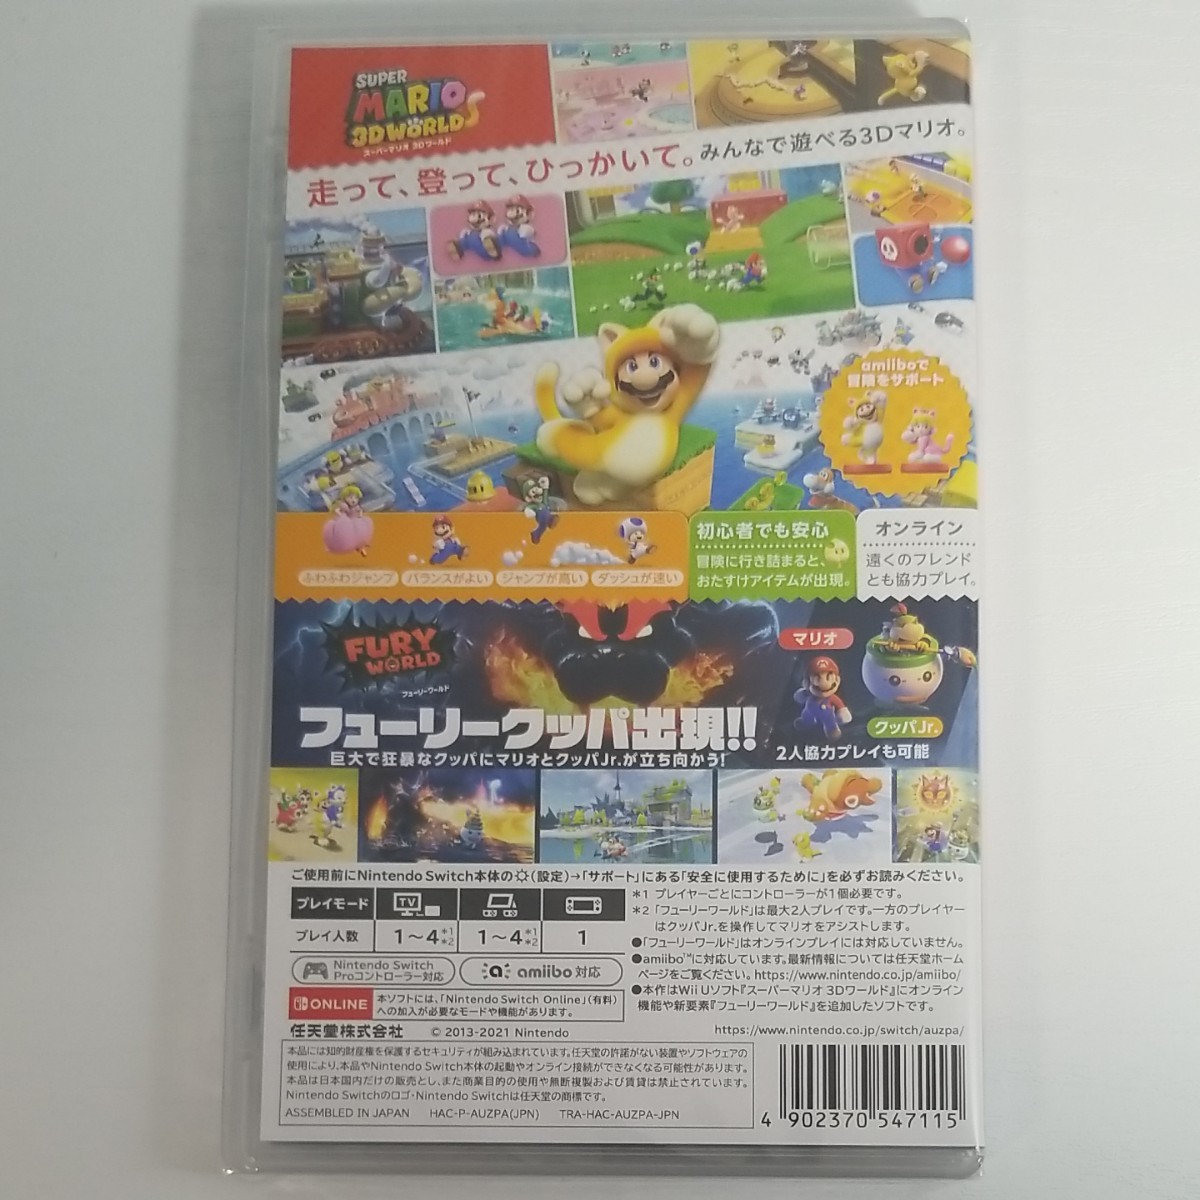 未開封新品 スーパーマリオ 3Dワールド + フューリーワールド Nintendo Switch